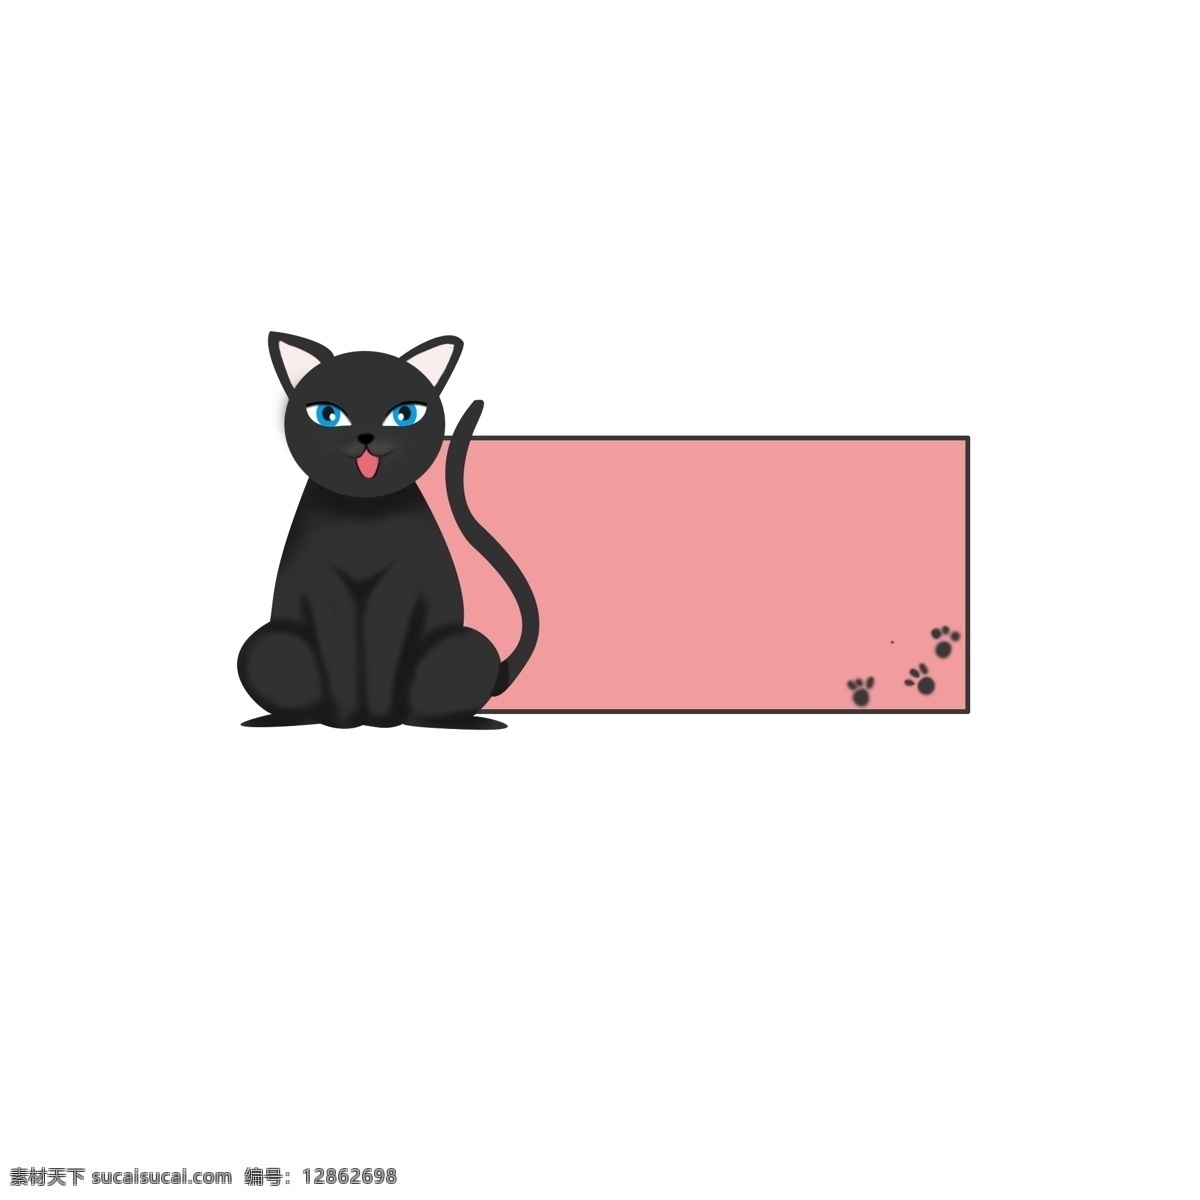 可爱 黑猫 卡通 边框 商用 纹理边框 小清新 手绘 粉色 猫爪 可商用